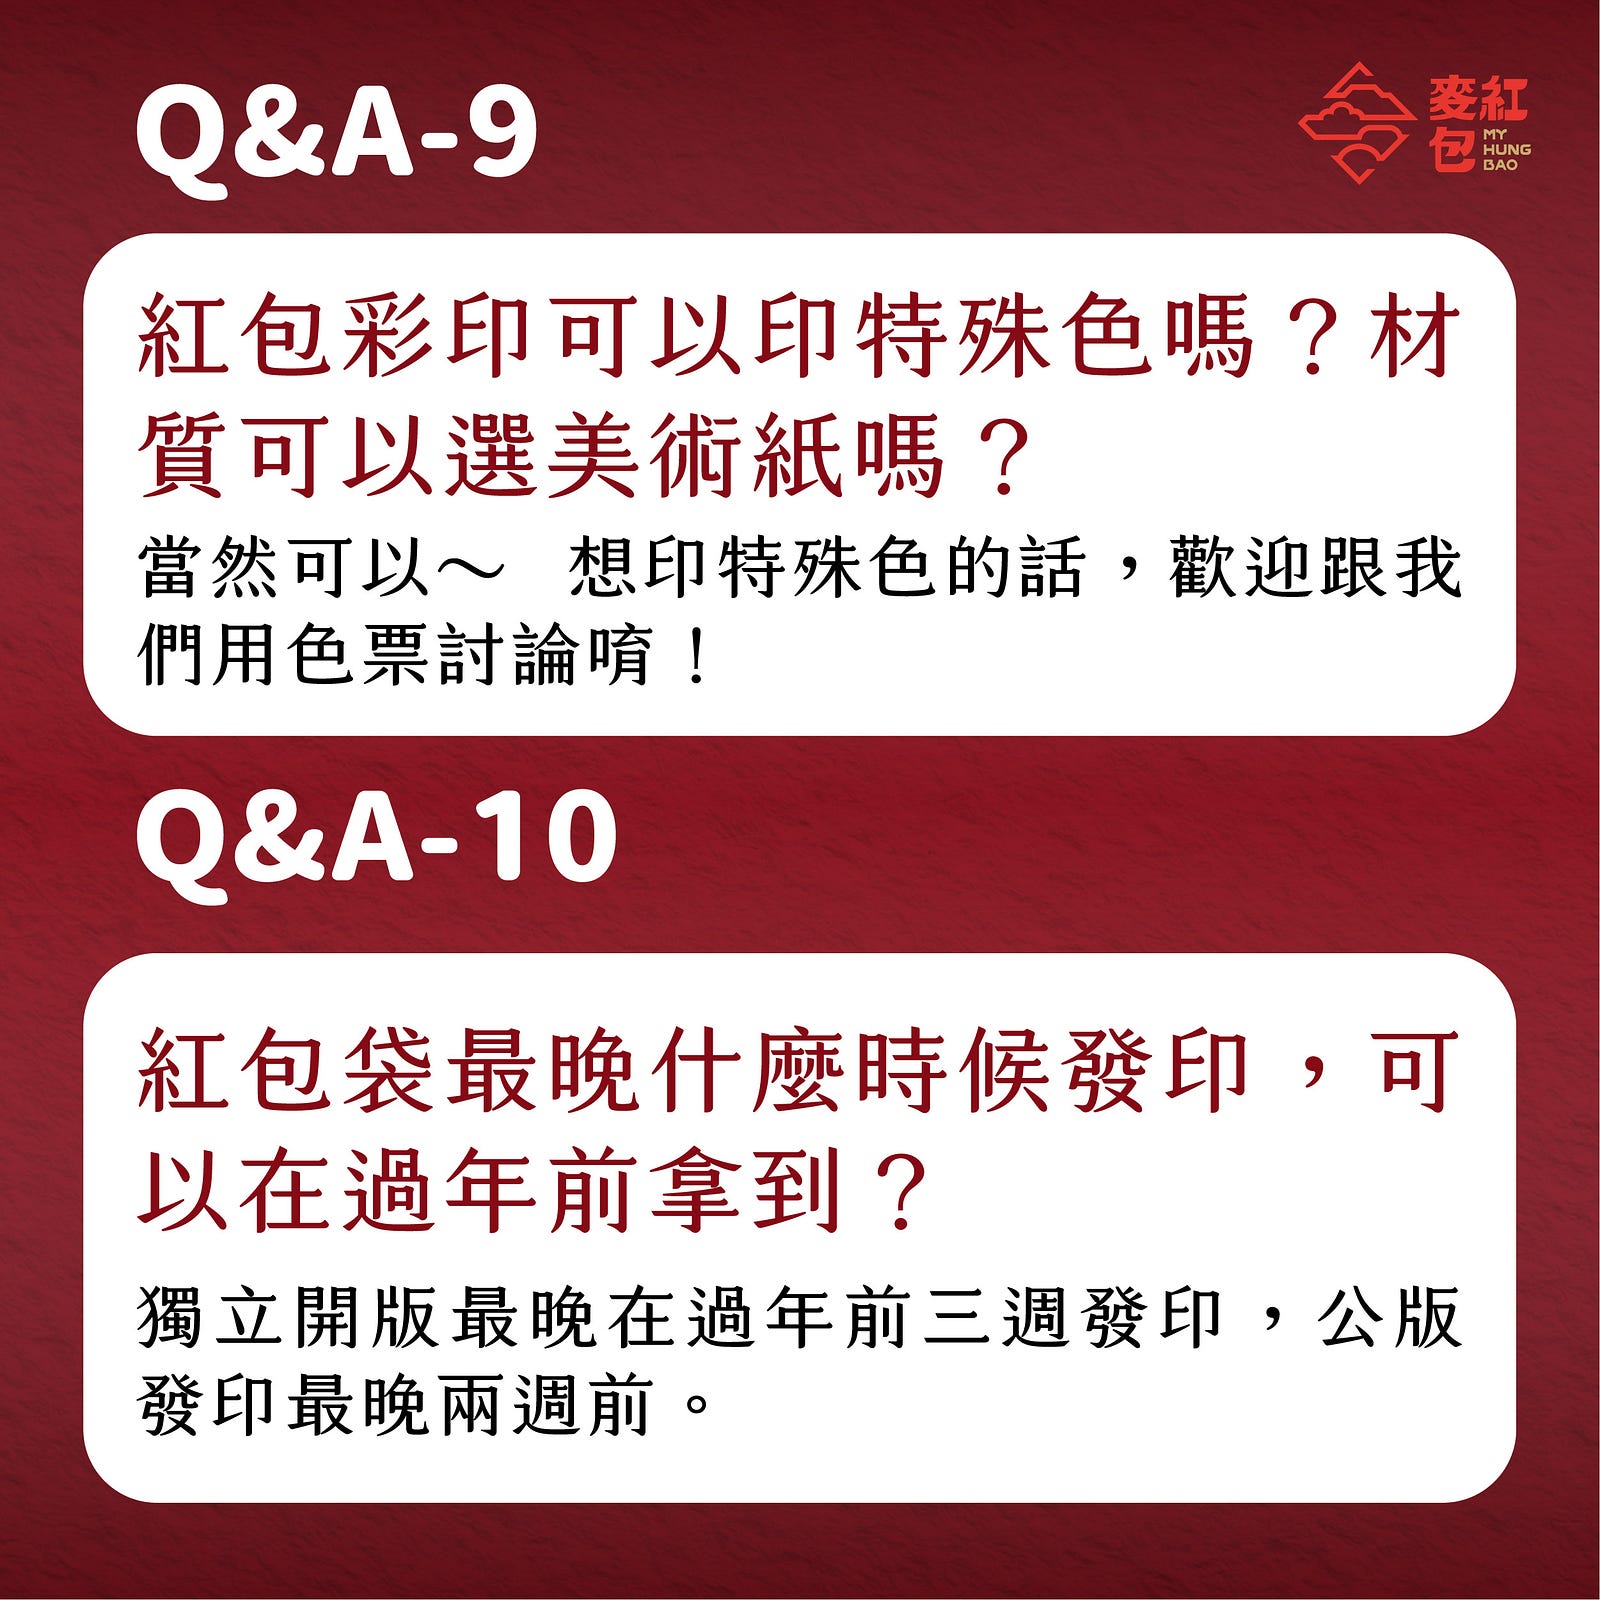 【印前Q&A】網友最常問的10個紅包印製問題-Q&A Part9 & Q&A Part10